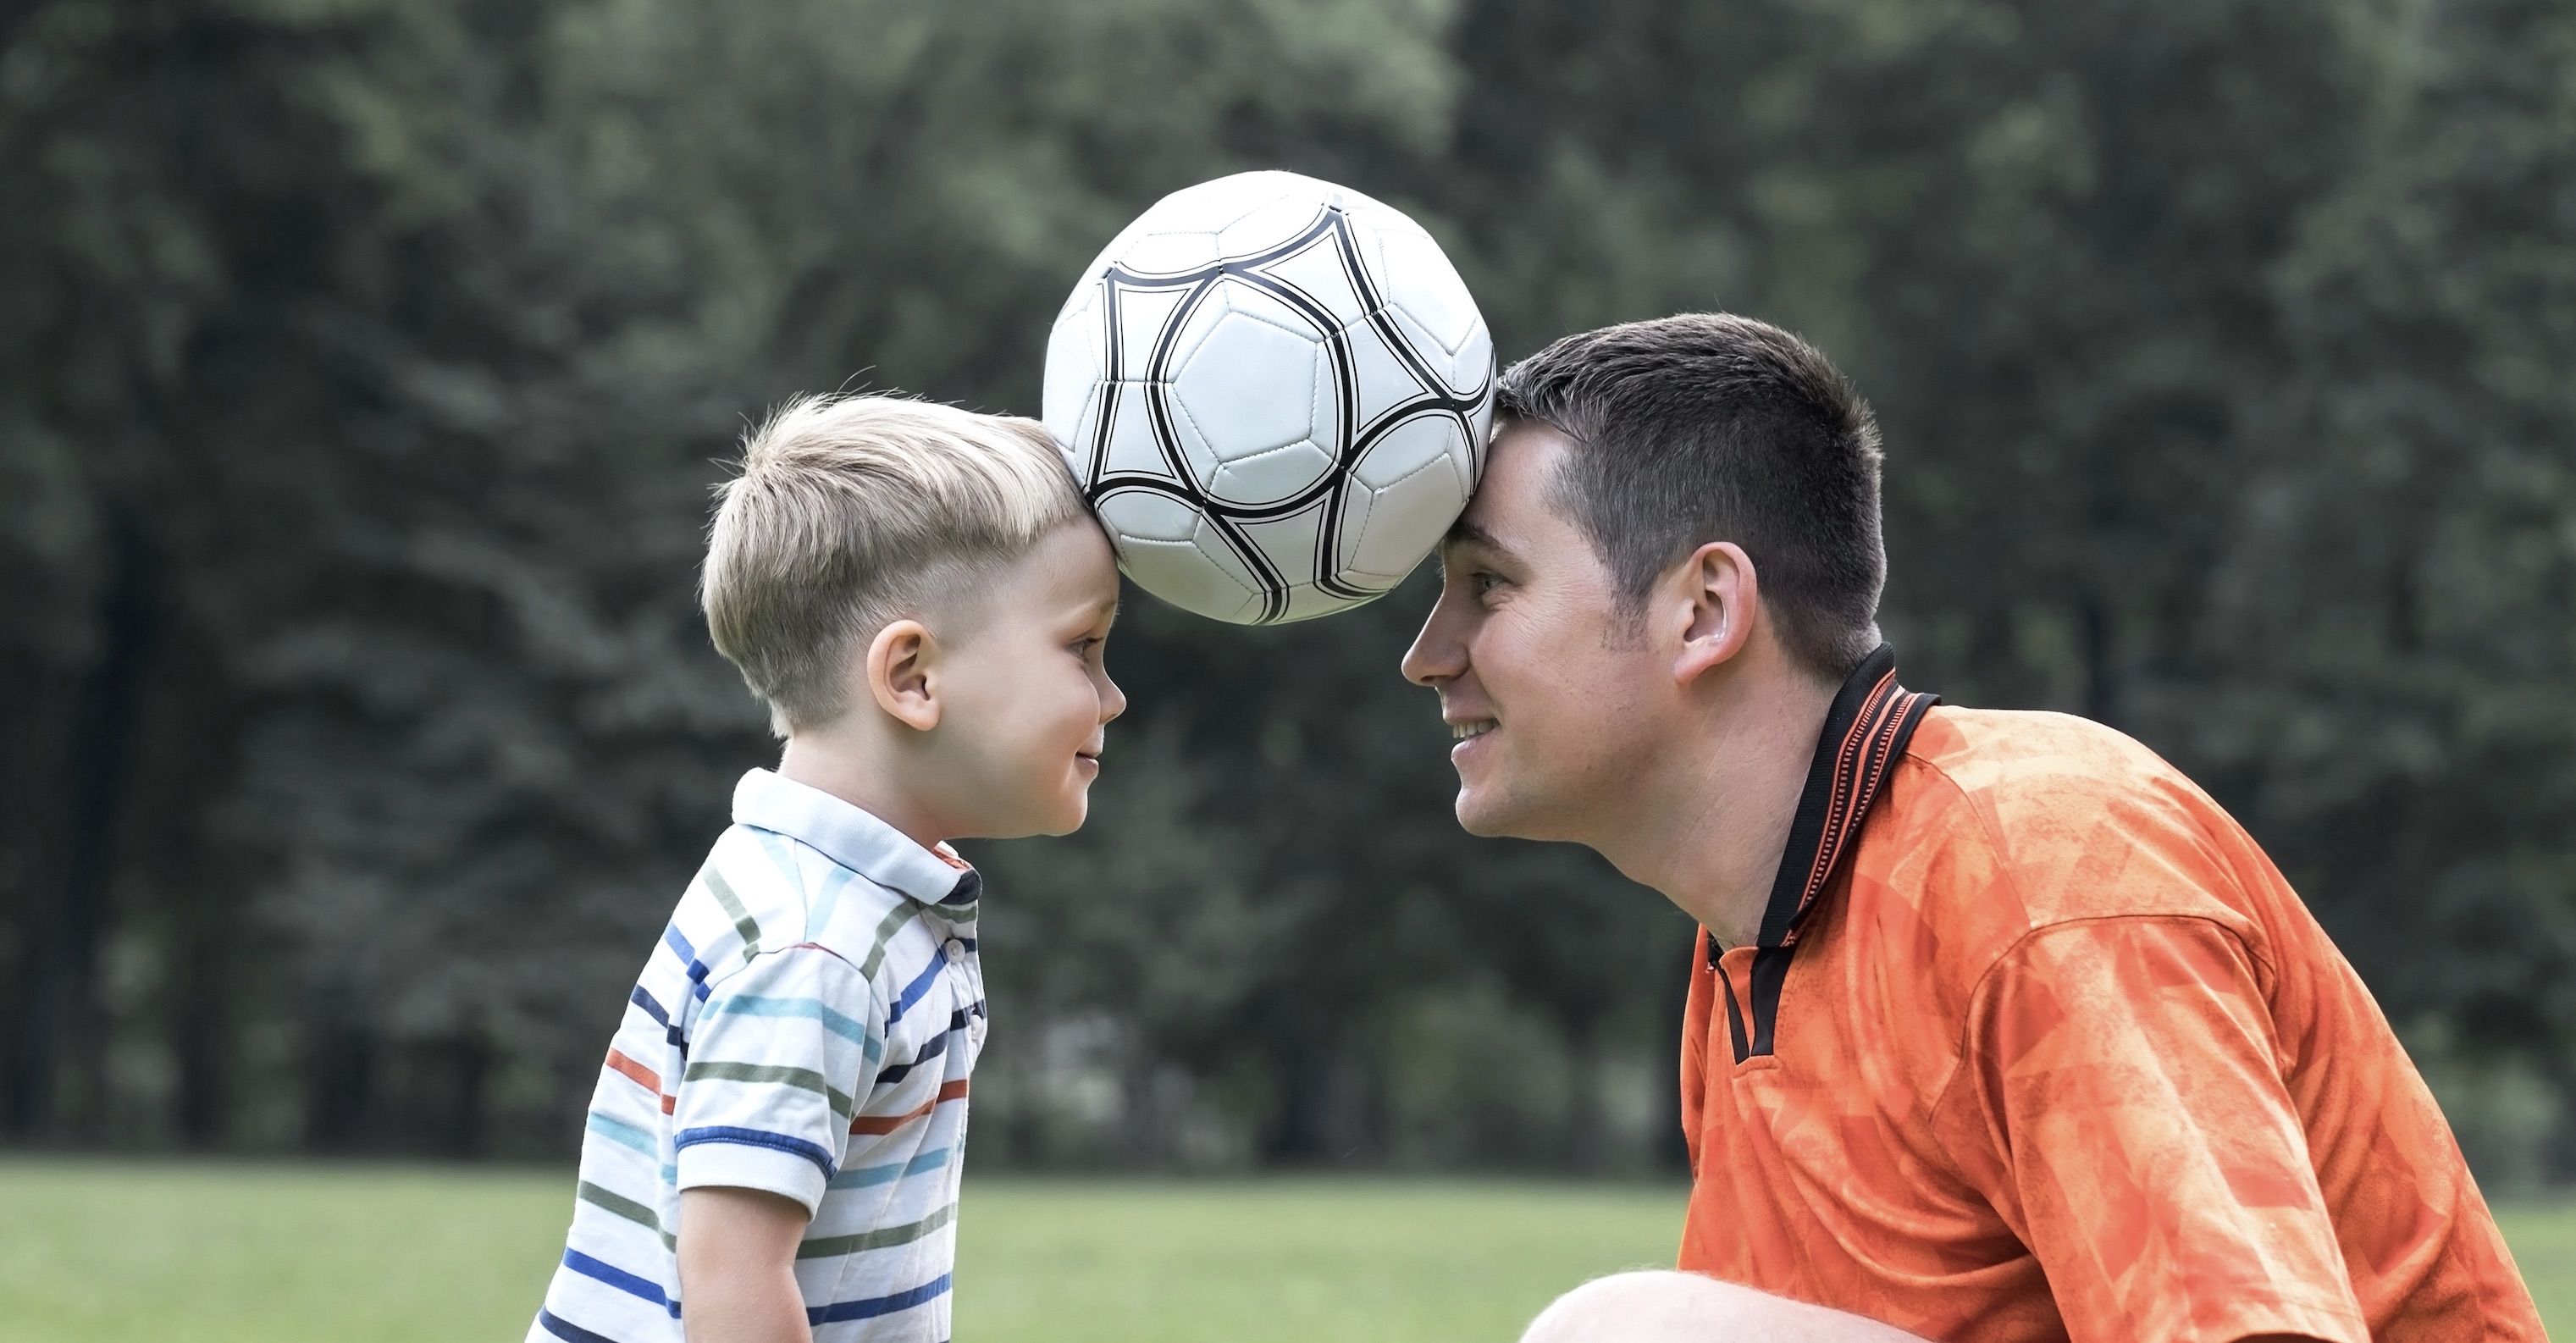 Папа играет в футбол. Футбол с сыном. Дети играют в футбол. Фотосессия сын футбол. Папа и сын футбол.